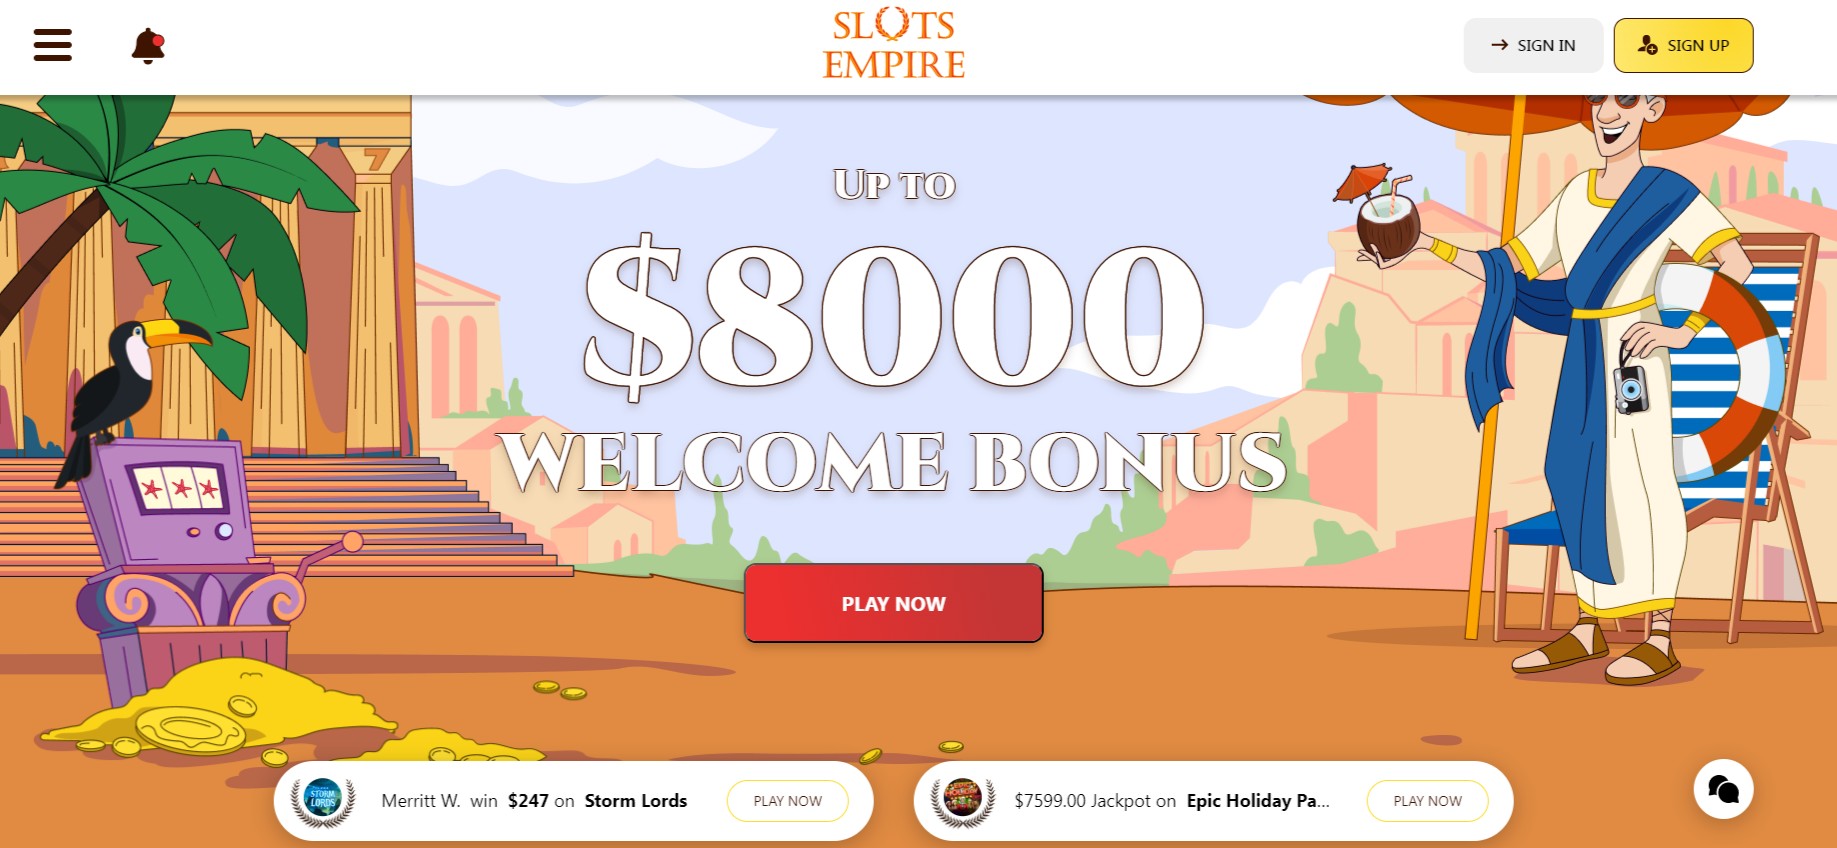 Slots empire casino homepage screenshot